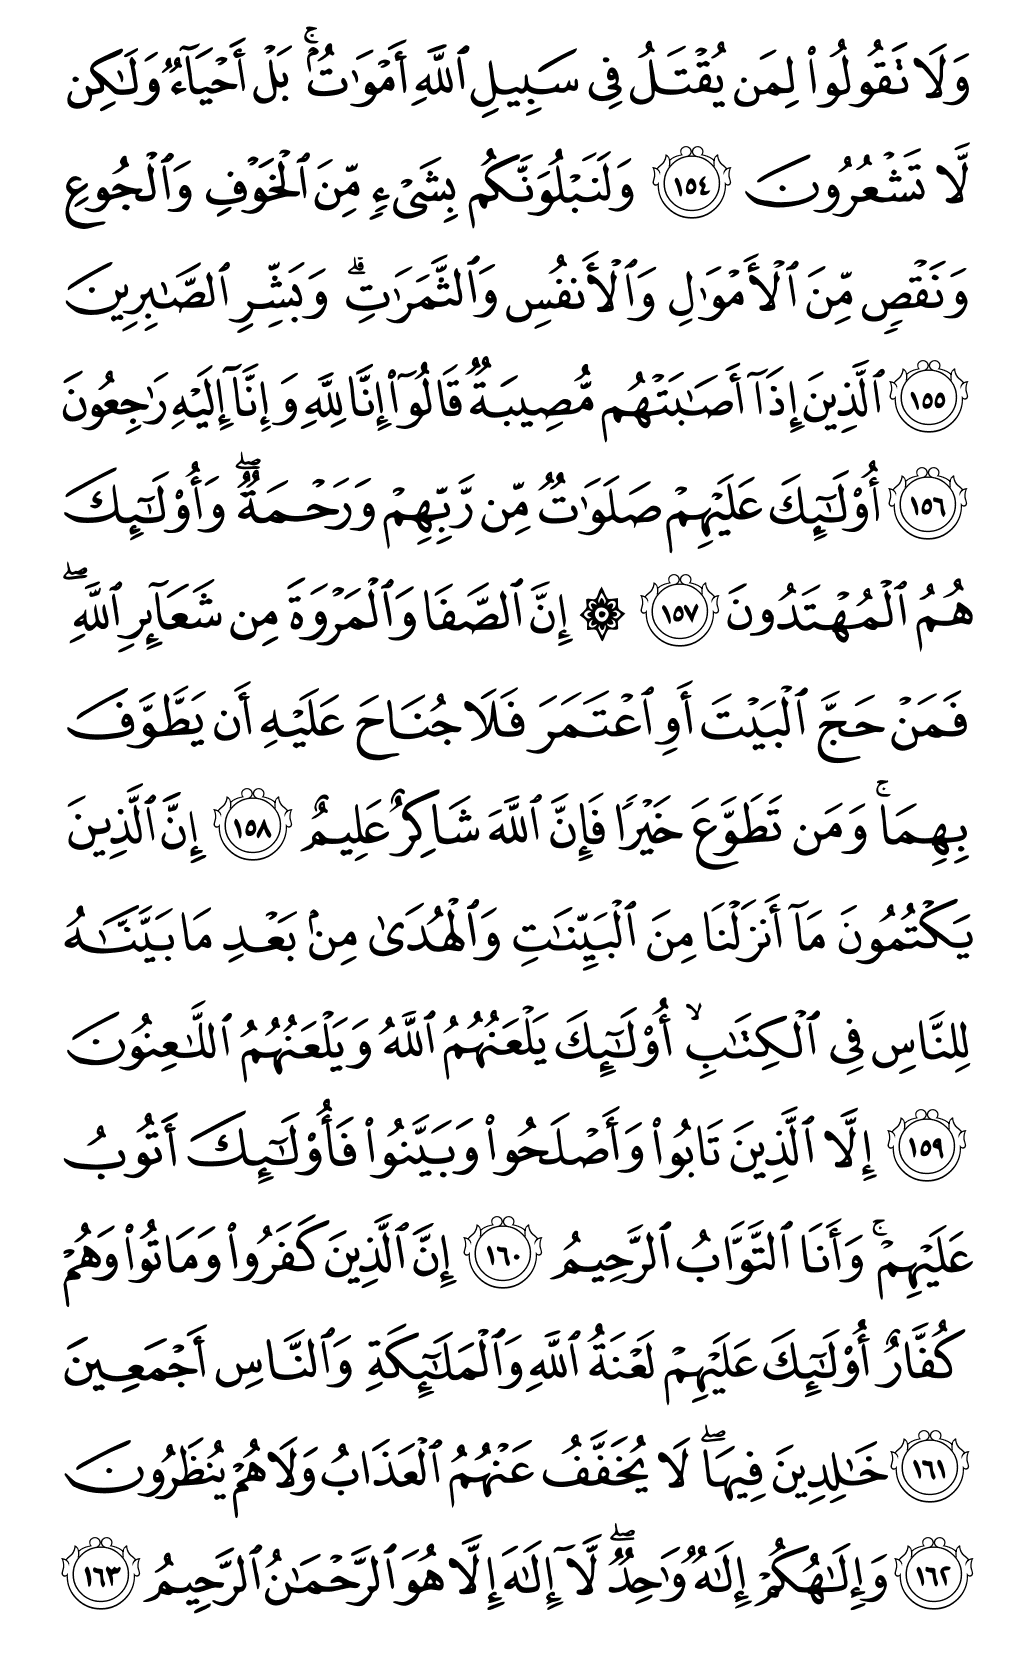 الصفحة رقم 24 من القرآن الكريم